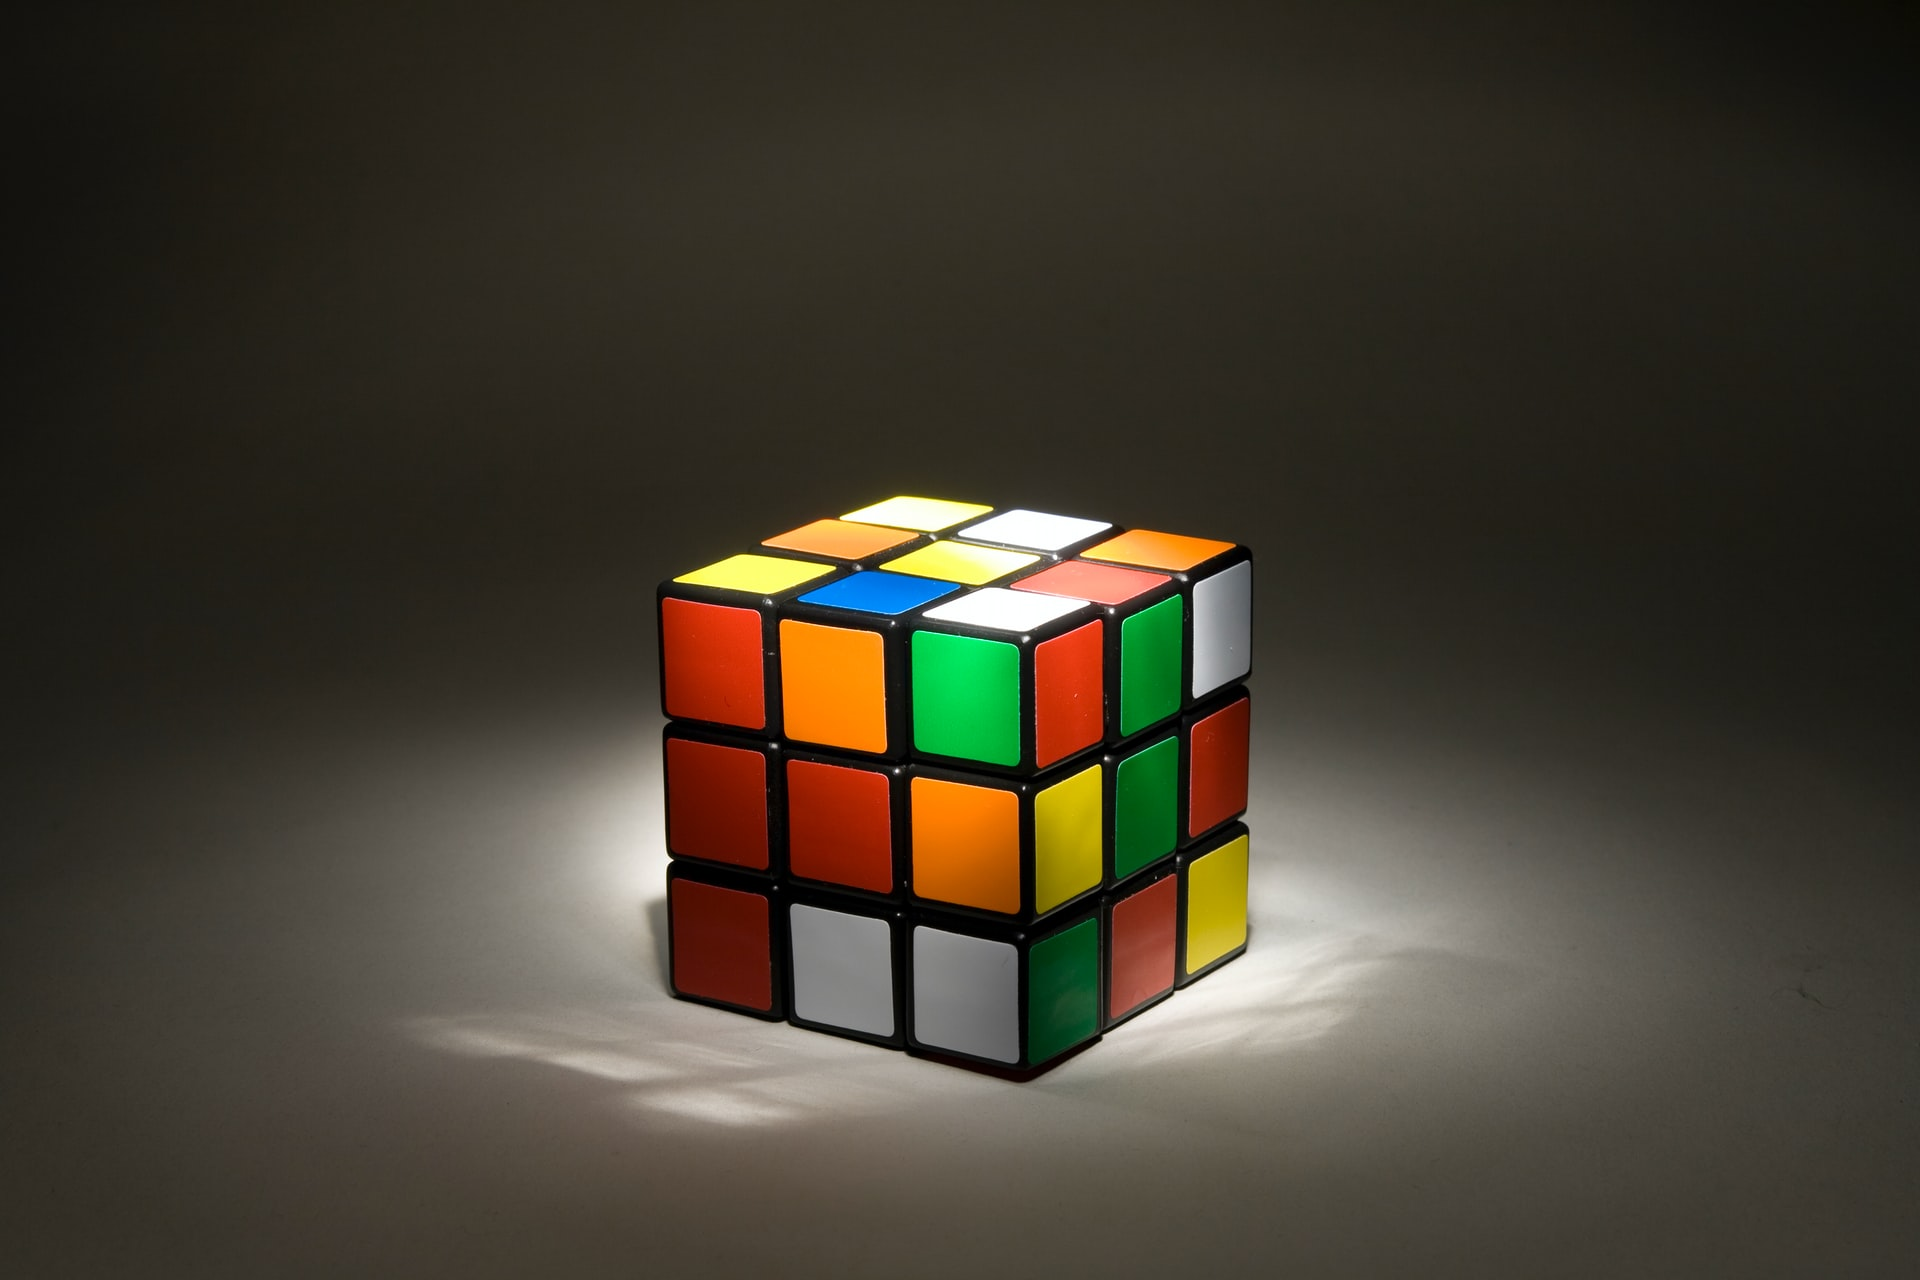 Um cubo de Rubik baralhado.